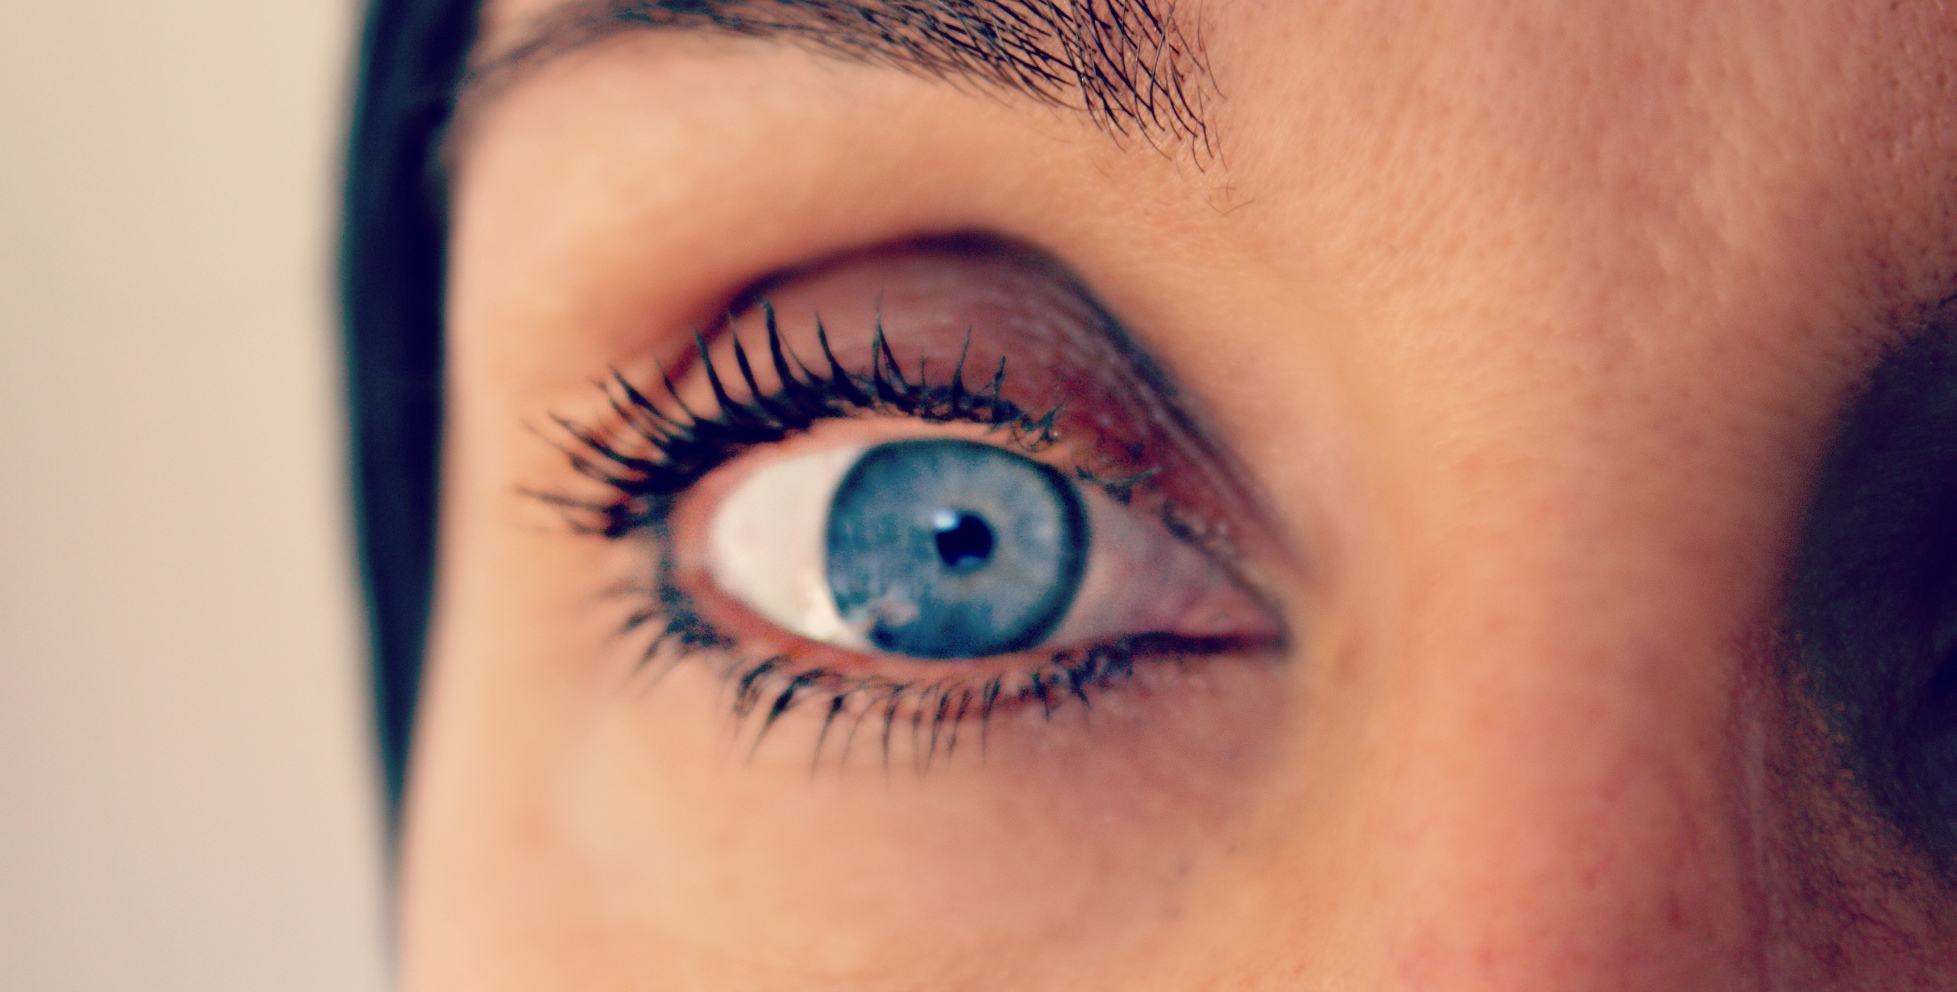 Η οκριπλασμίνη αποτρέπει την απώλεια όρασης λόγω υαλοειδοωχρικής έλξης